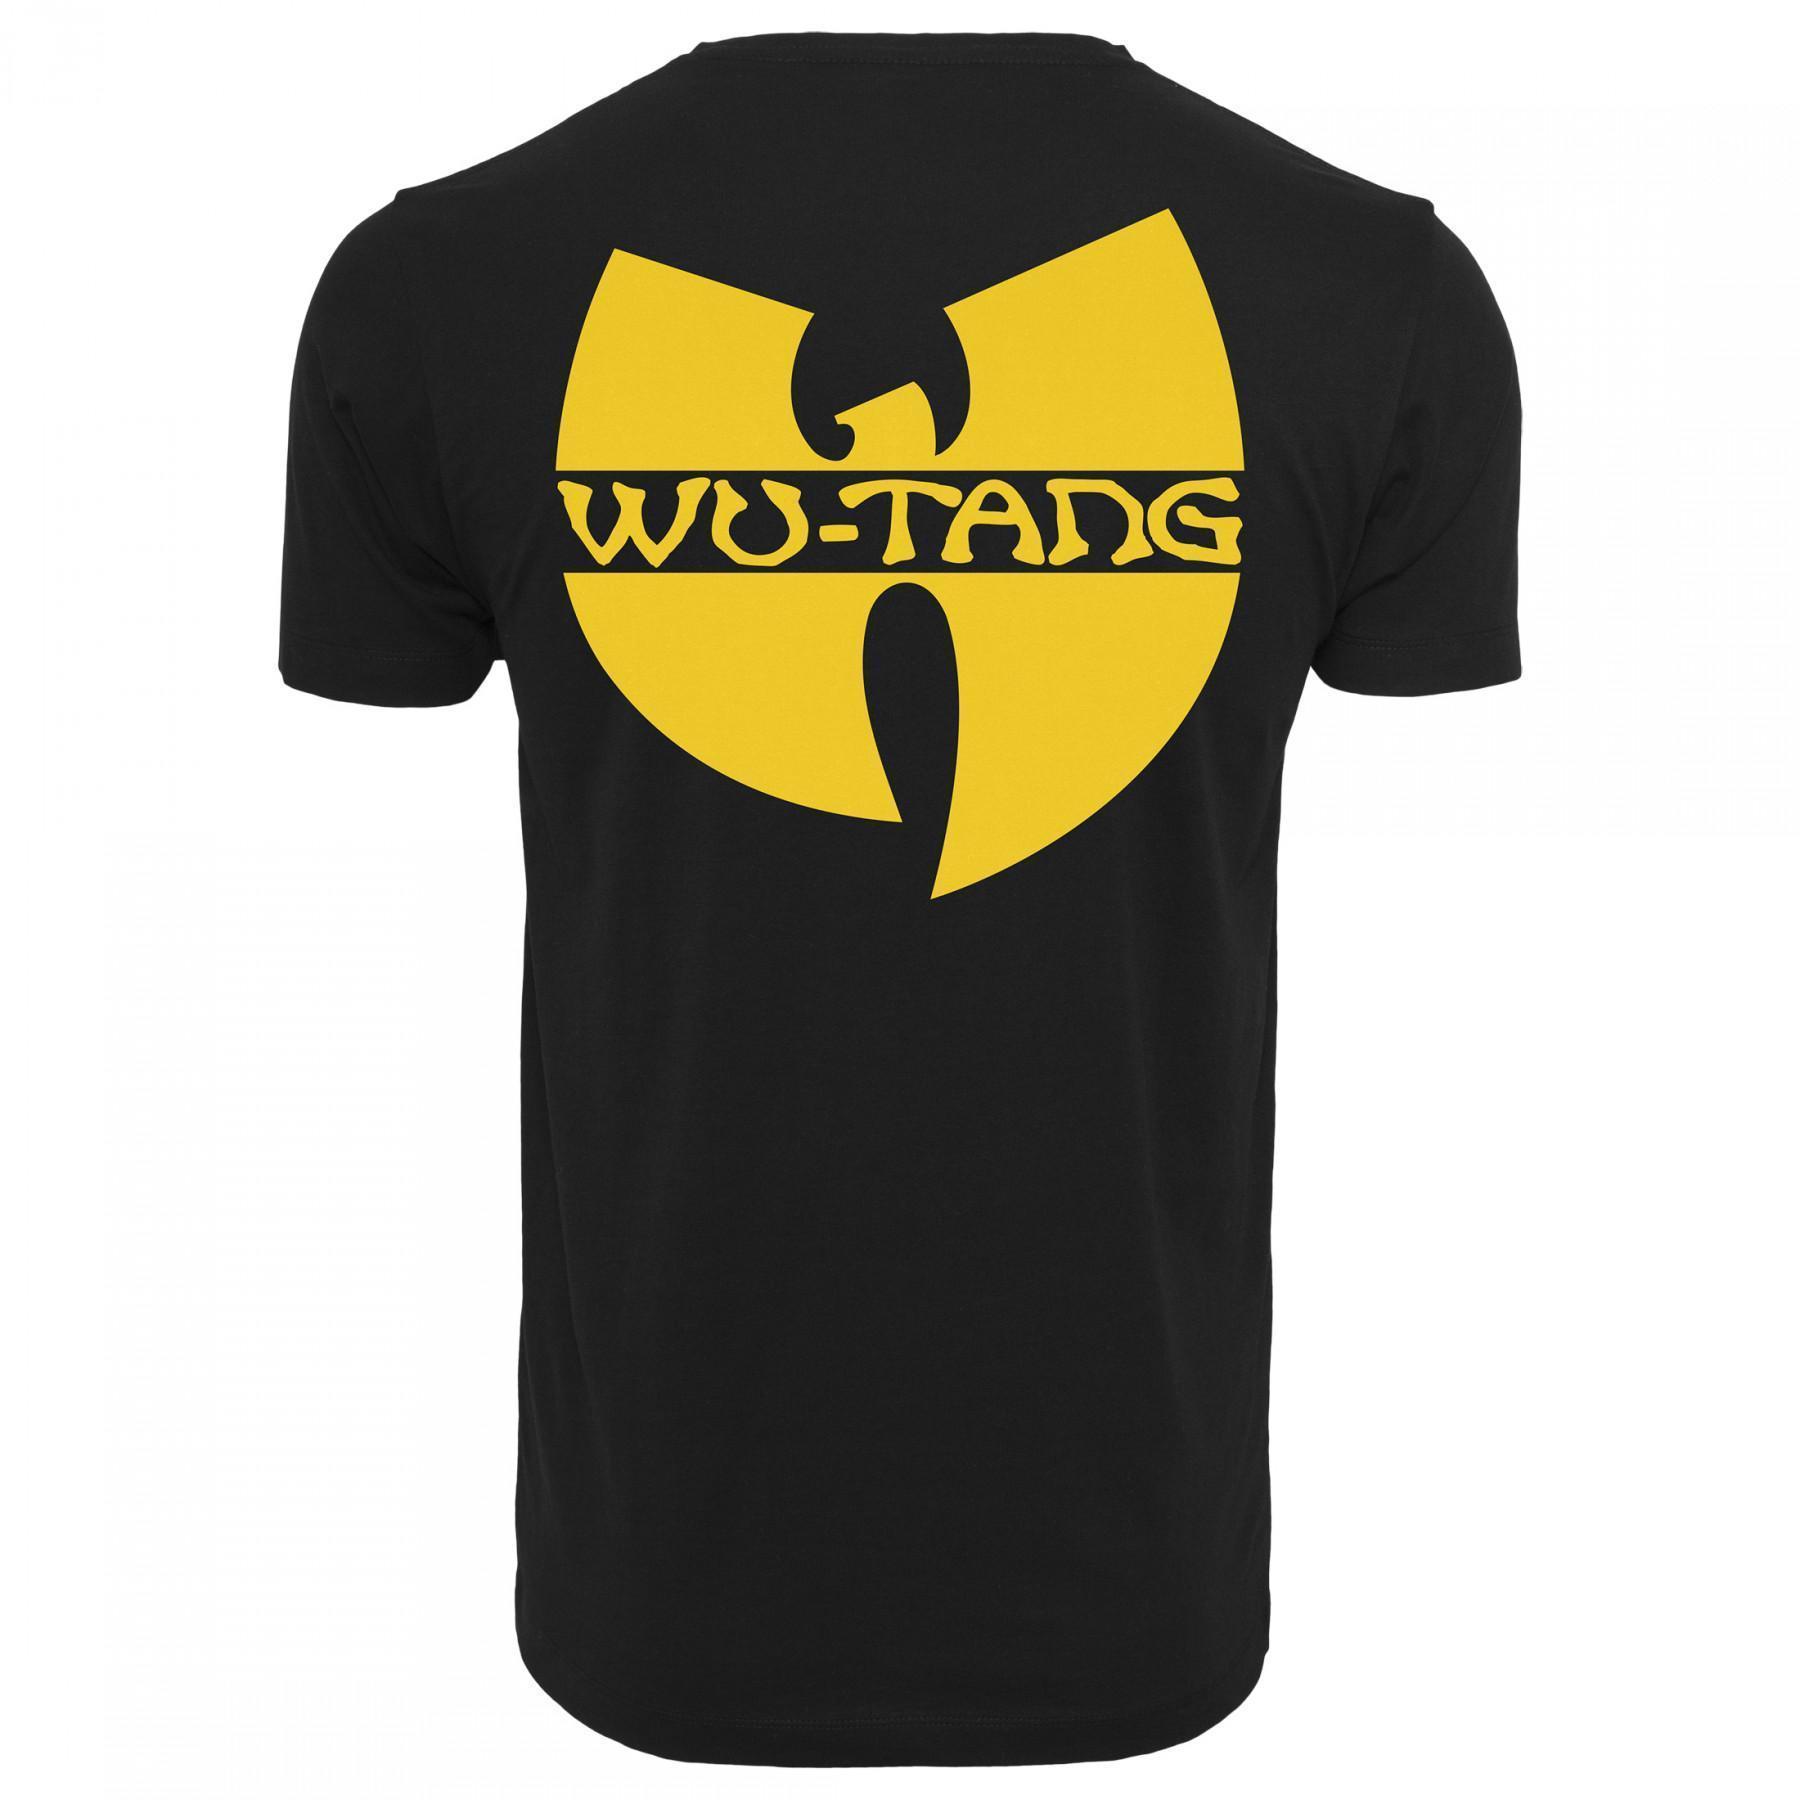 T-shirt Wu-wear front-back